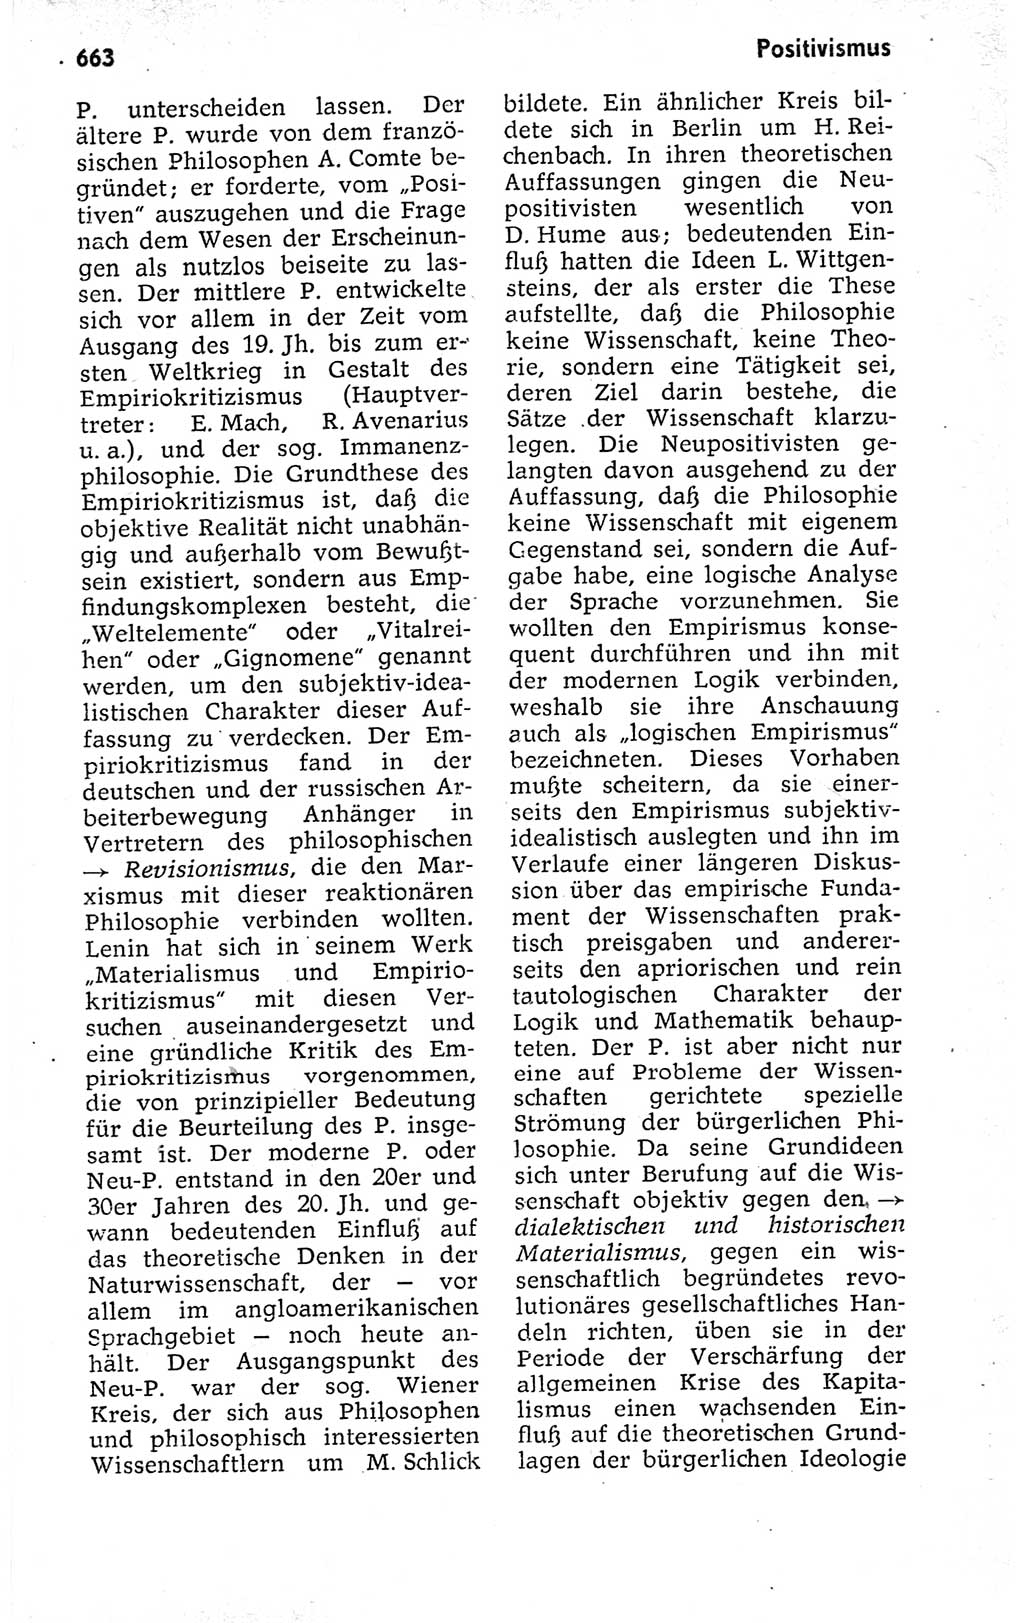 Kleines politisches Wörterbuch [Deutsche Demokratische Republik (DDR)] 1973, Seite 663 (Kl. pol. Wb. DDR 1973, S. 663)